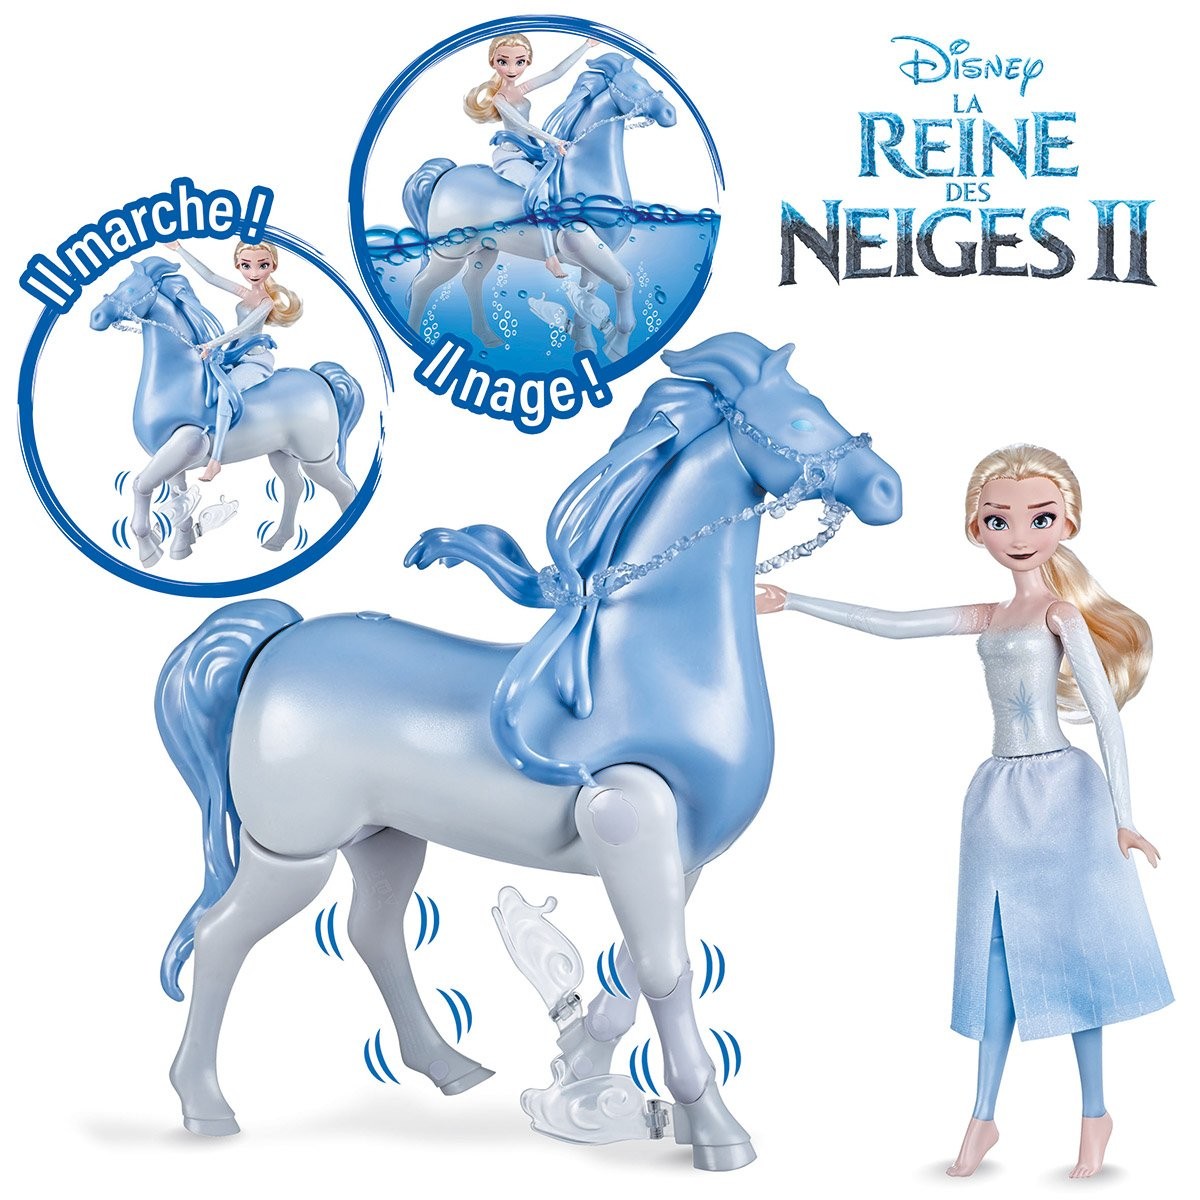 Disney La Reine Des Neiges 2 - Star Color - Elsa sur cheval Pas